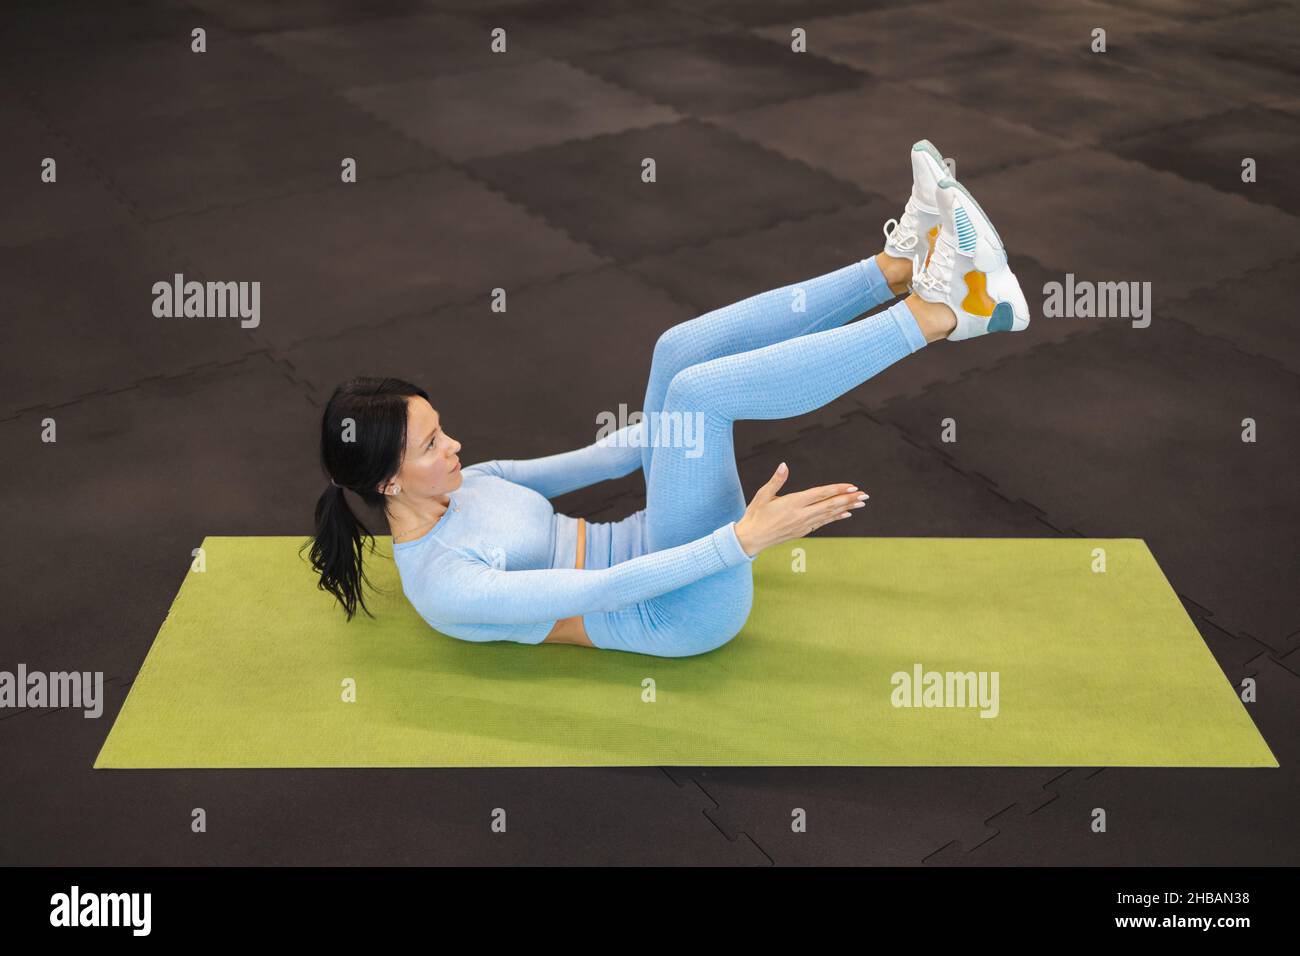 Une jeune fille de forme physique qui se trouve sur le sol de la salle de gym secoue l'abs en levant les jambes Banque D'Images